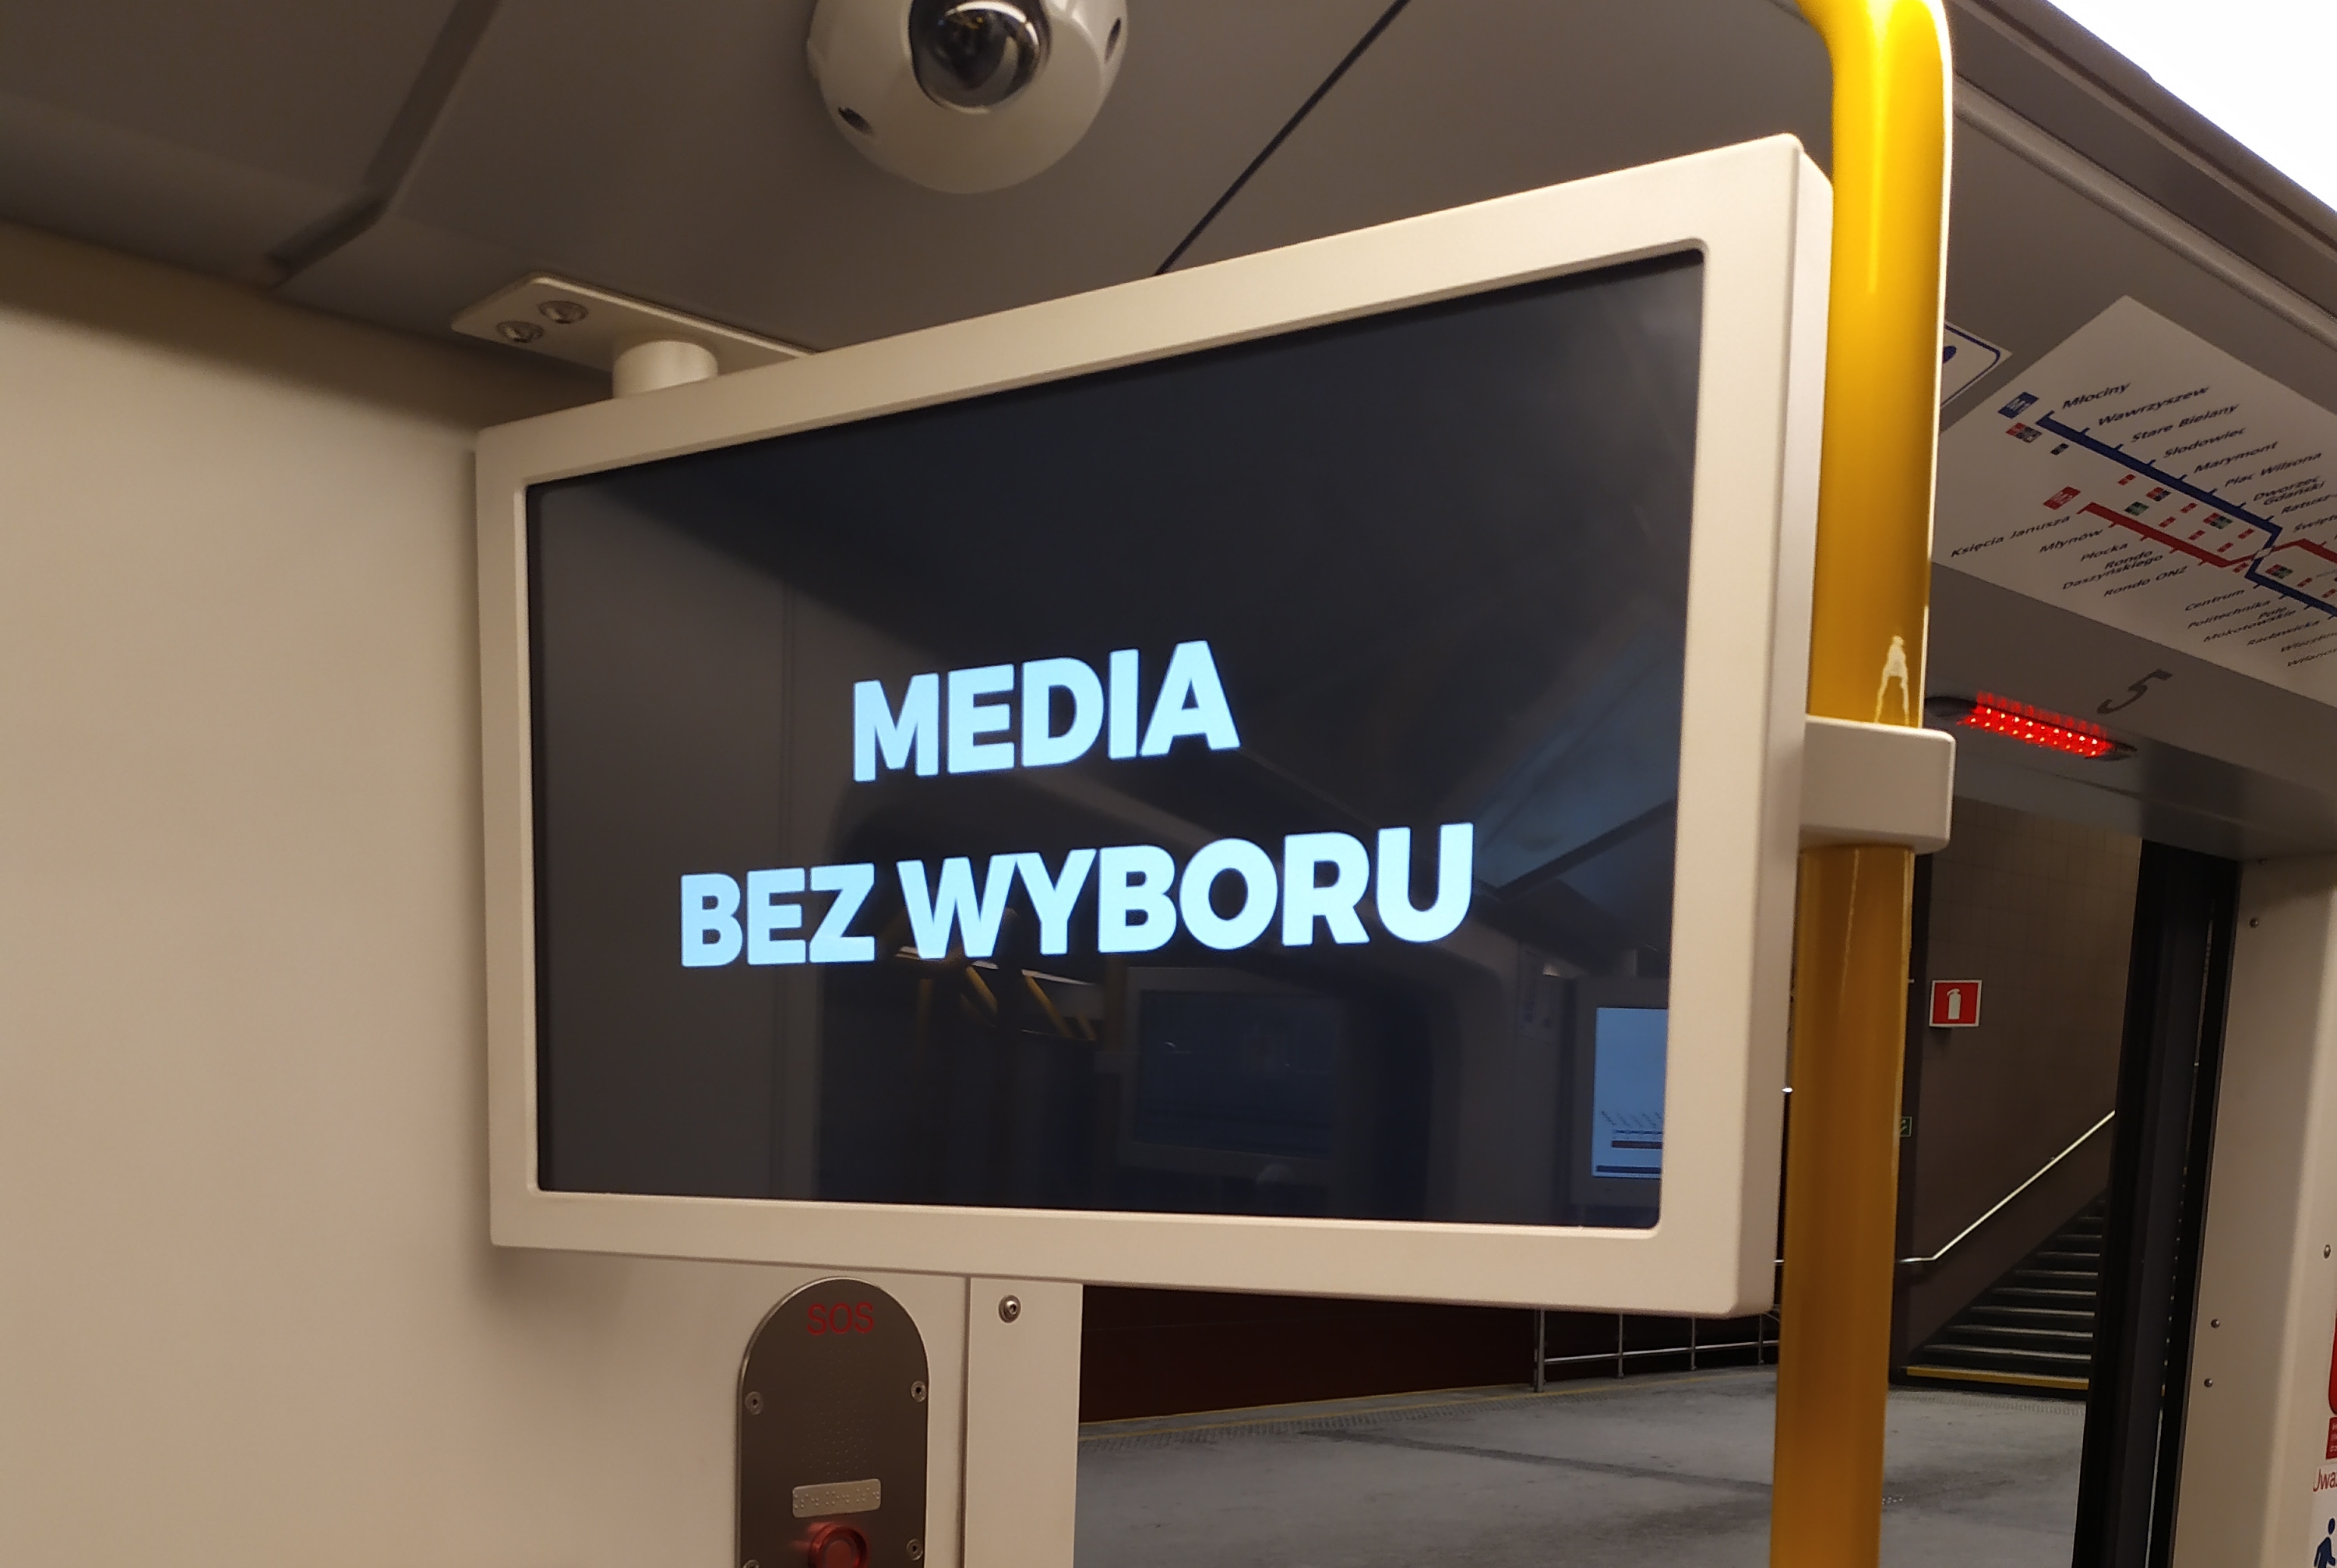 Media_bez_wyboru_warszawa_metro